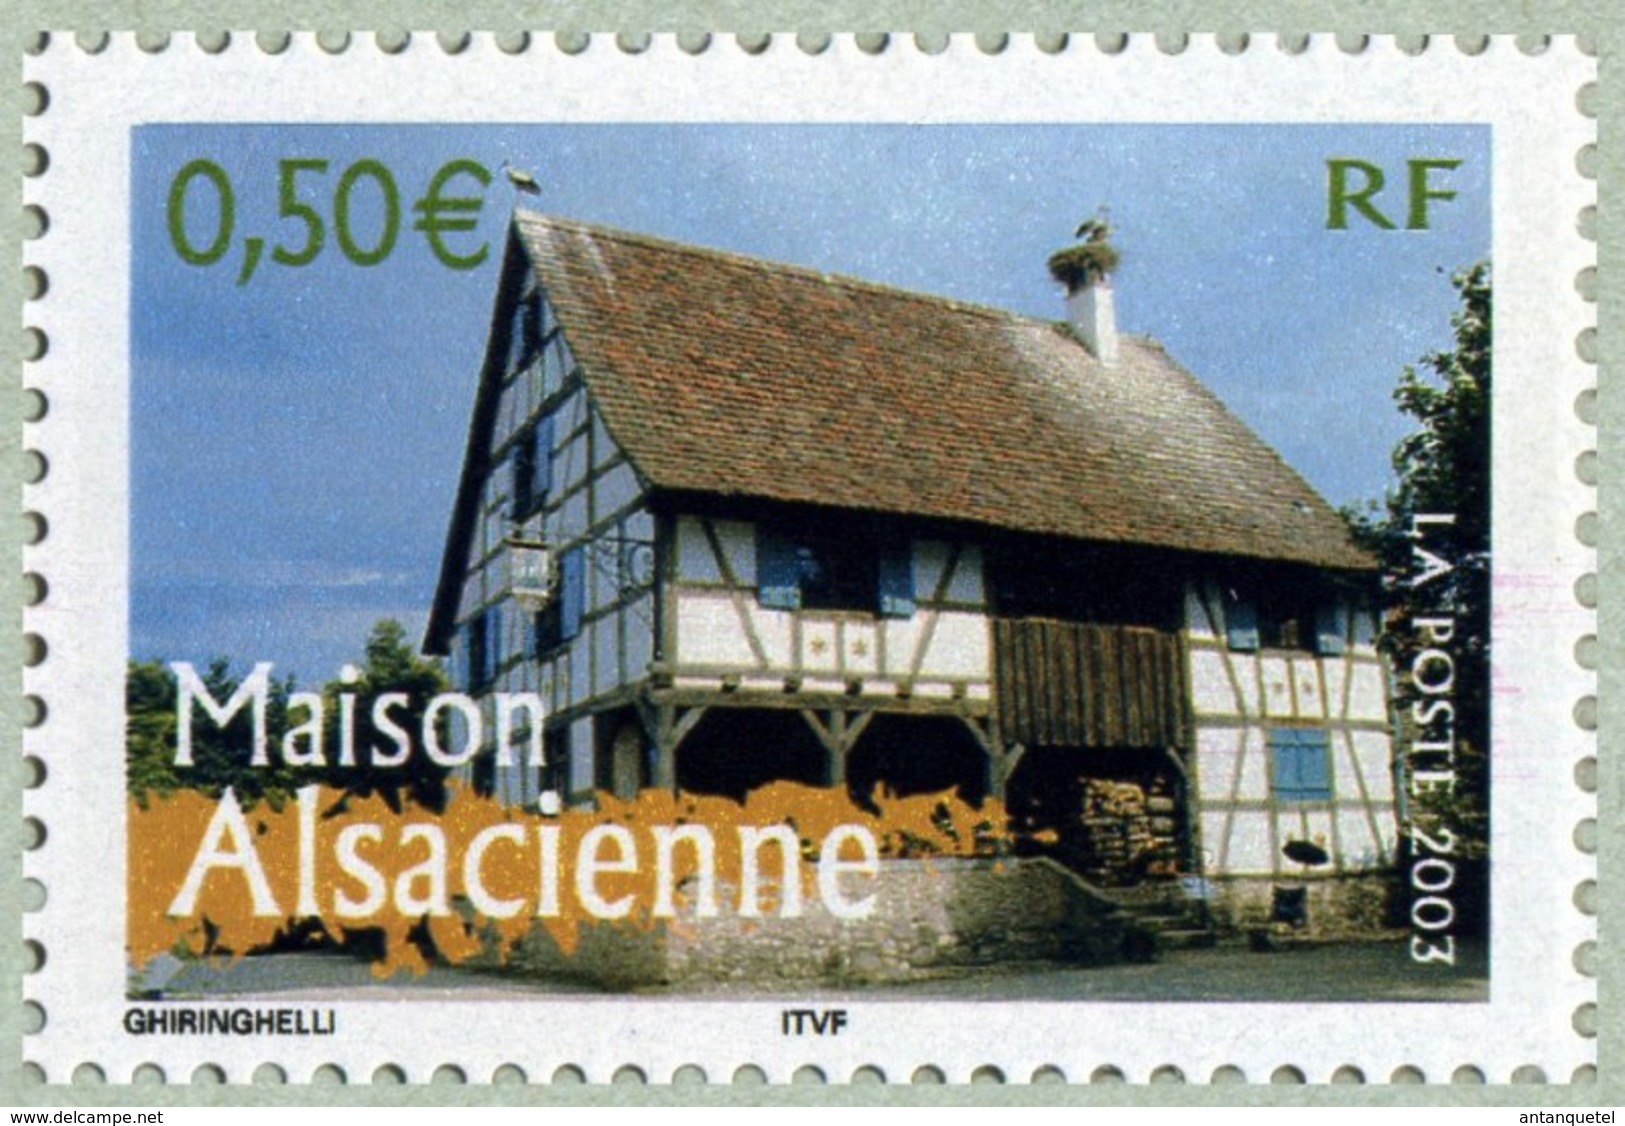 Timbre 2003—Portraits De Régions N° 2—La France à Voir—Maison Alsacienne—N° 3596—NEUF - Unused Stamps